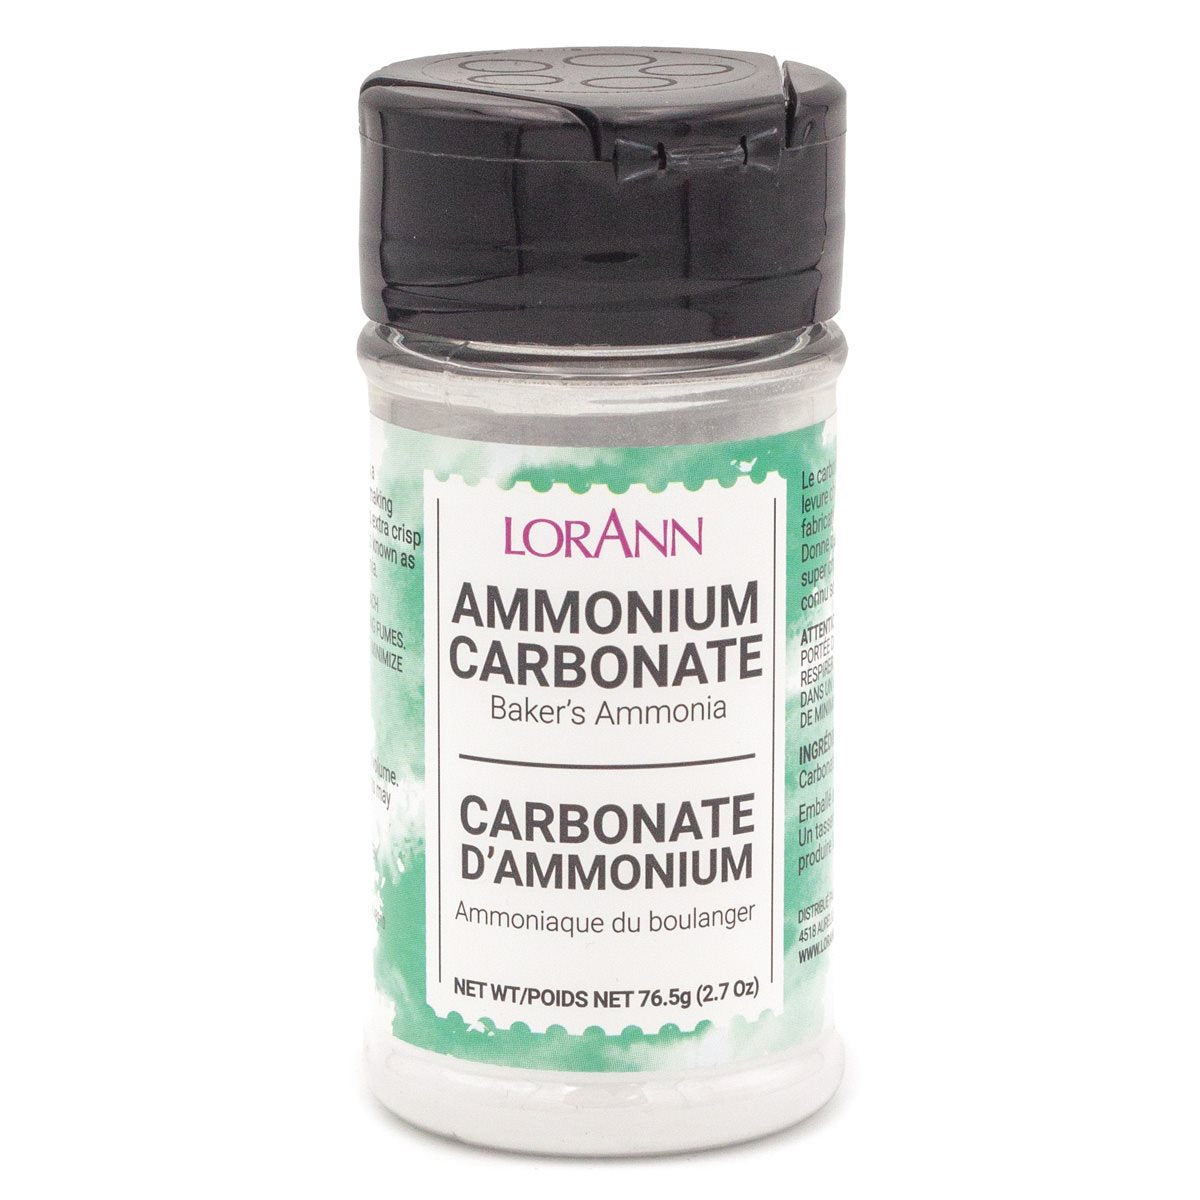 Baker's Ammonia (Ammonium Carbonate) 2.7 oz., jar